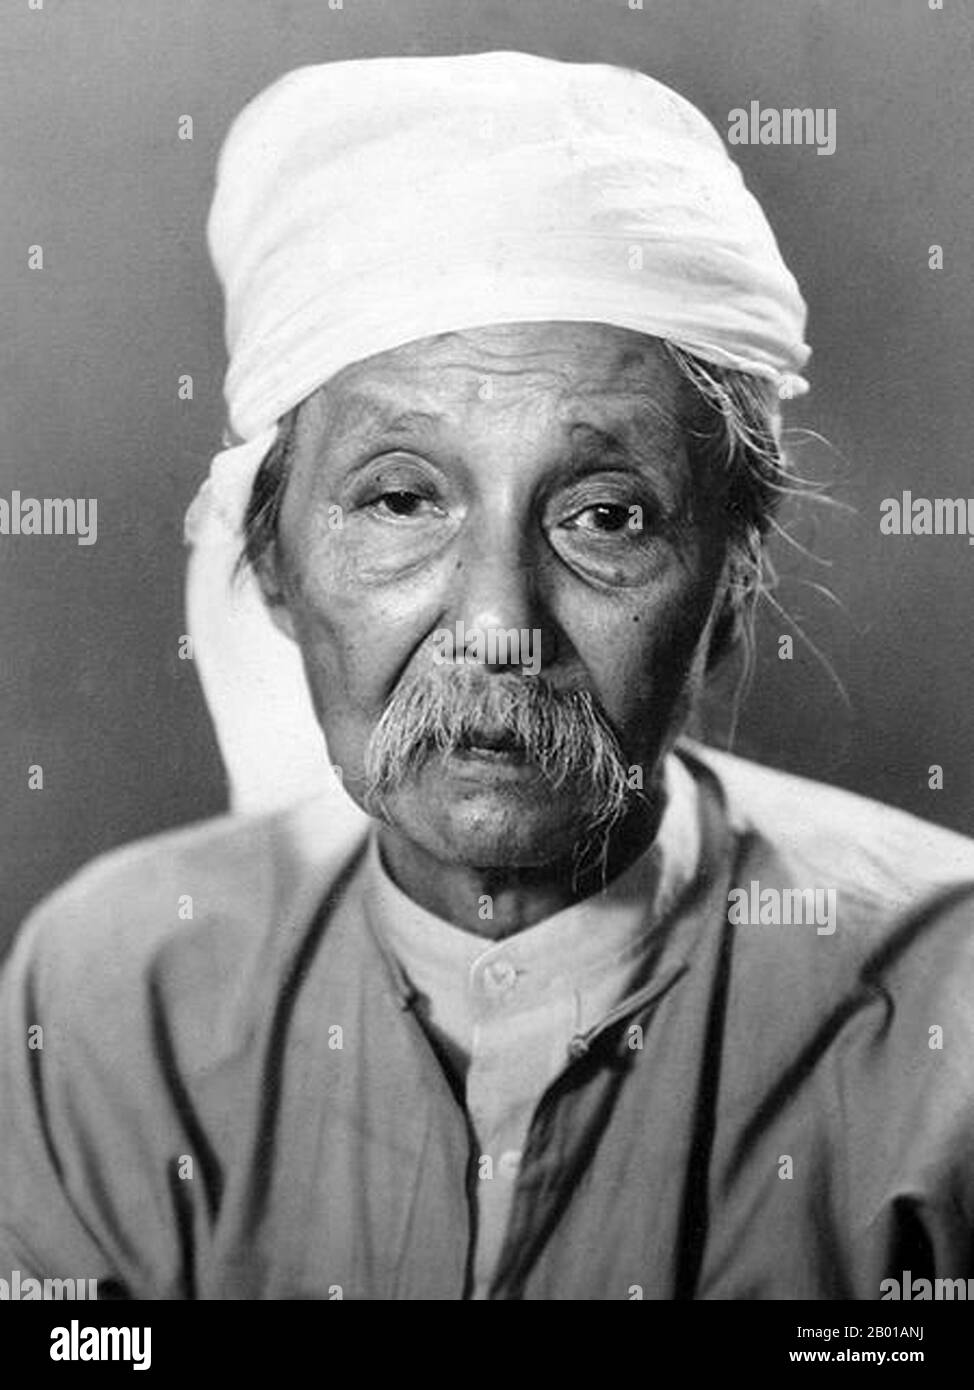 Birmania/Myanmar: Thakin Kodaw Hmaing, poeta, scrittore, politico e nazionalista birmano (23 marzo 1876 - 23 luglio 1964), c.. 1958. Thakin Kodaw Hmaing è considerato uno dei più grandi poeti, scrittori e leader politici birmani della Birmania del 20th secolo. Egli è considerato come il Padre dei movimenti nazionalisti e di pace birmani e come un genio letterario. La sua eredità e la sua influenza sulle generazioni del dopoguerra possono ancora essere avvertite sia nella letteratura che nella situazione politica in corso in Myanmar (Birmania). Foto Stock